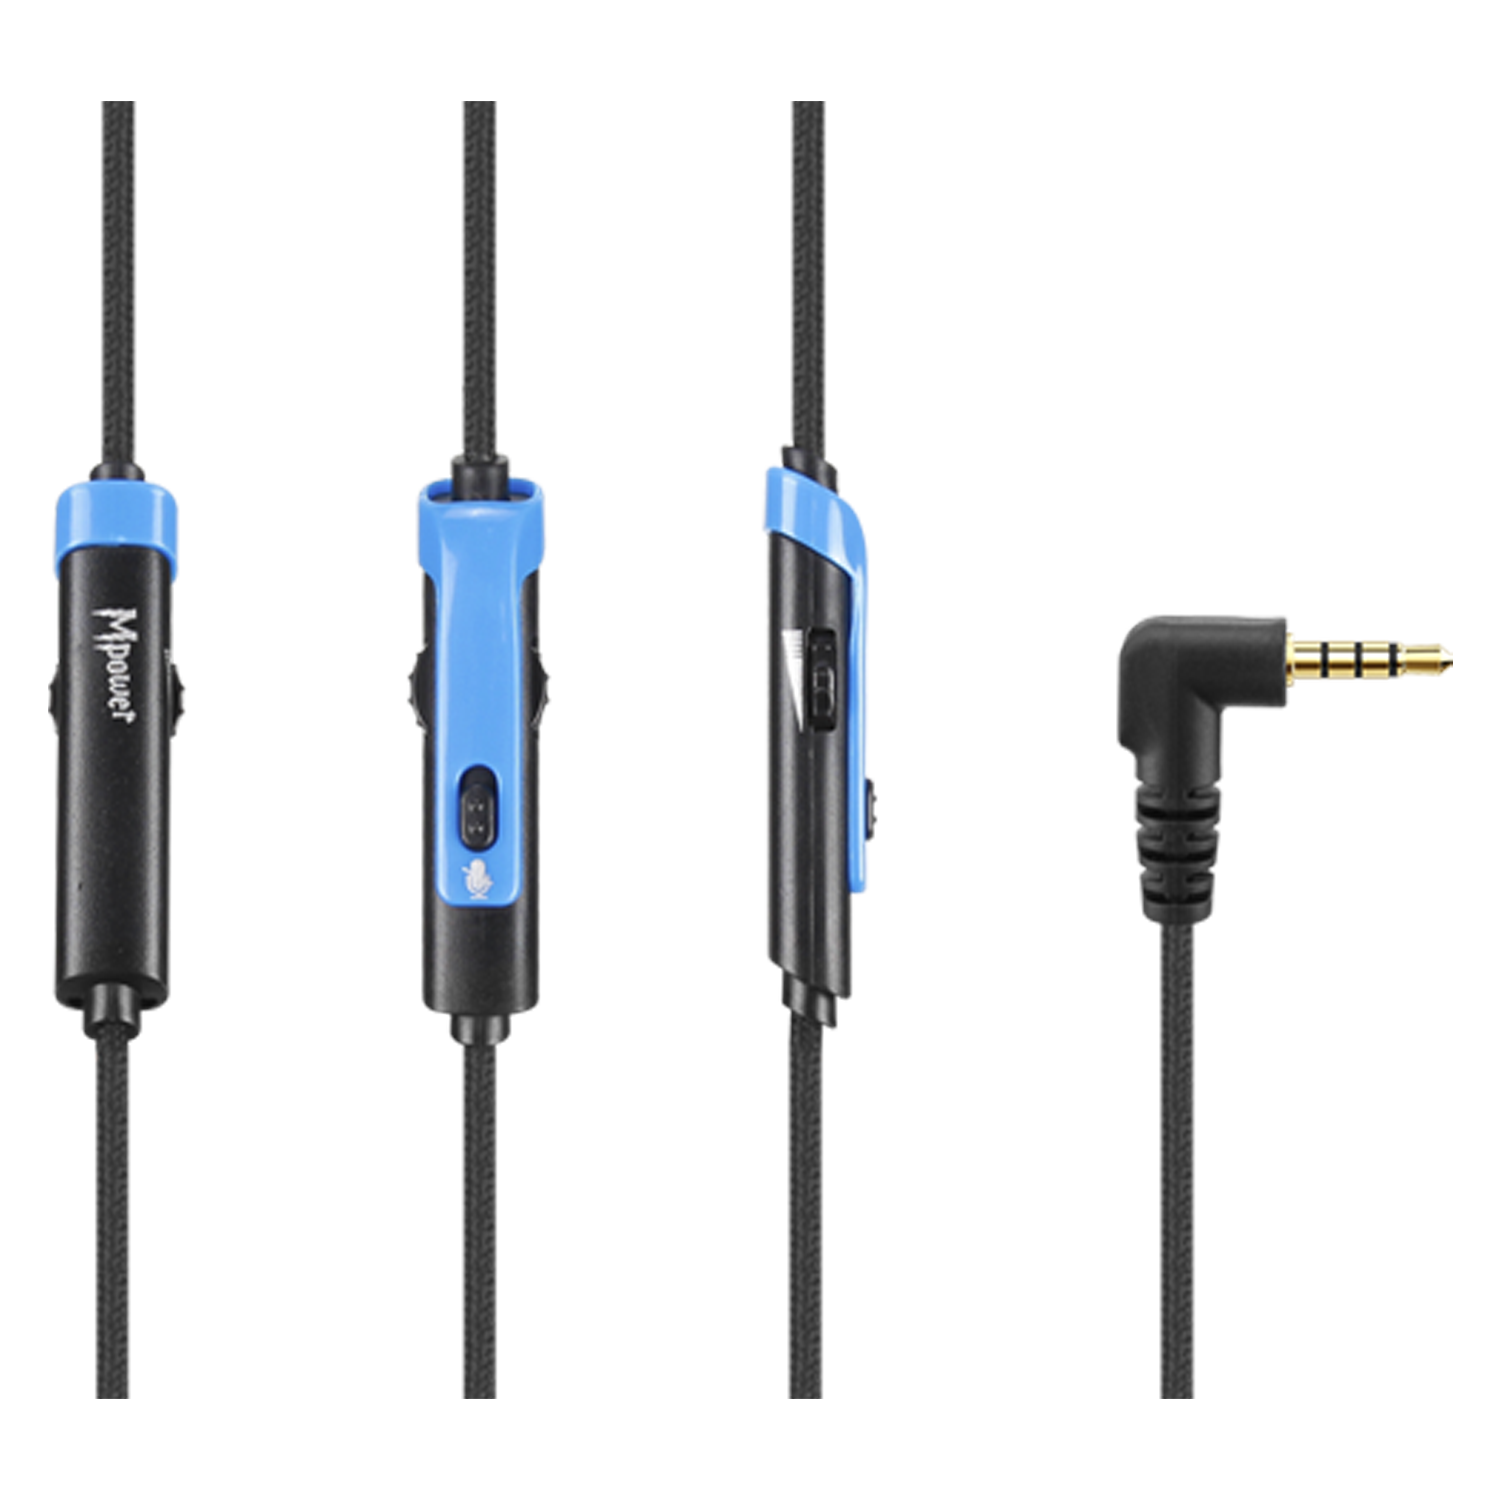 Headset Gamer Sades Mpower SA723 / com Fio - Preto e Azul